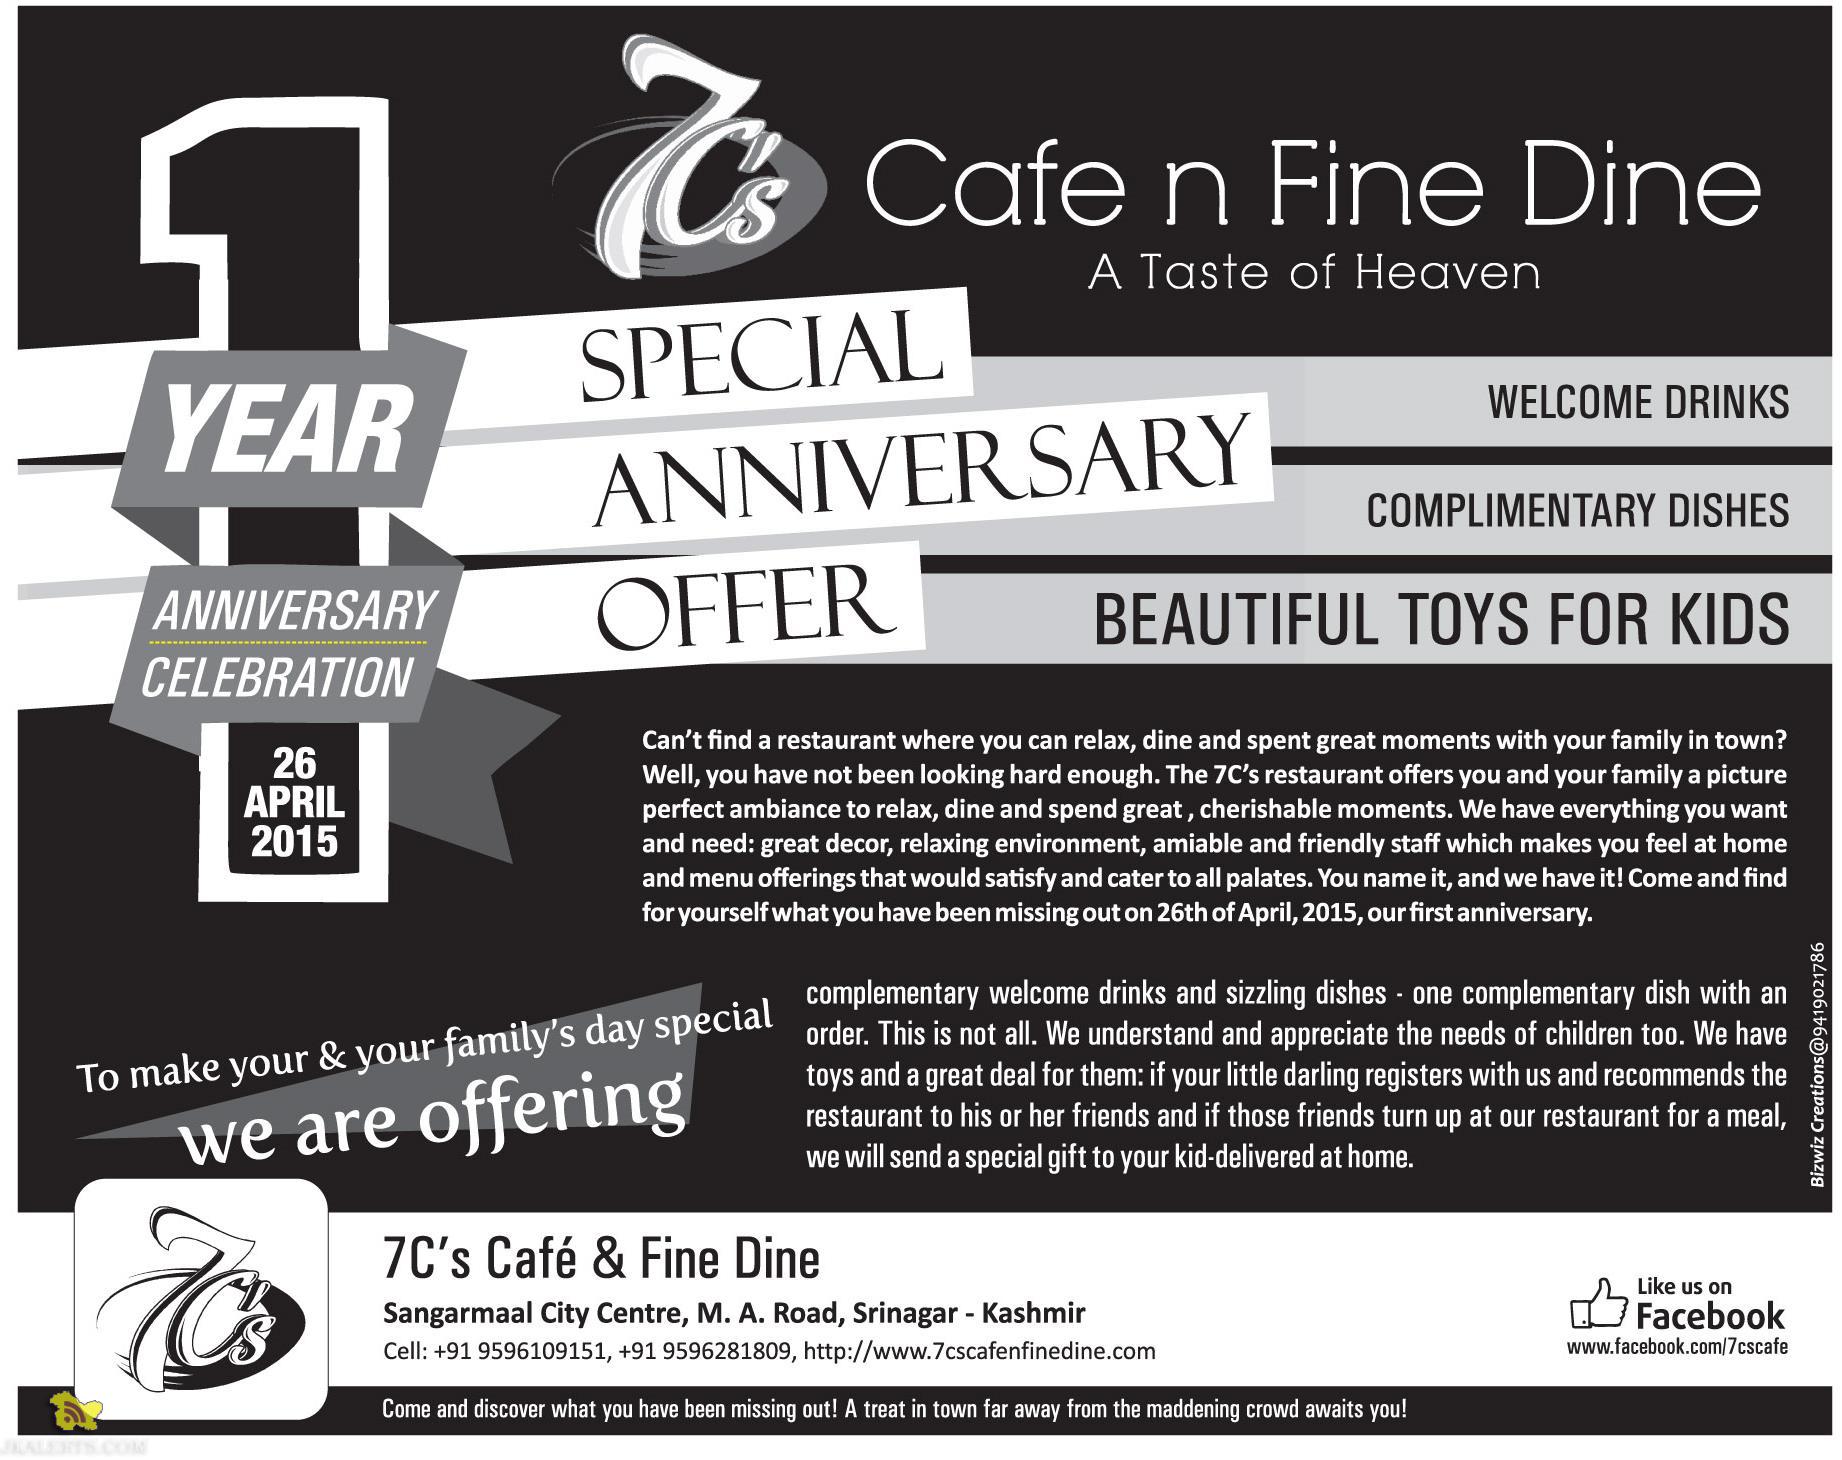 7C's Cafe & Fine Dine offer